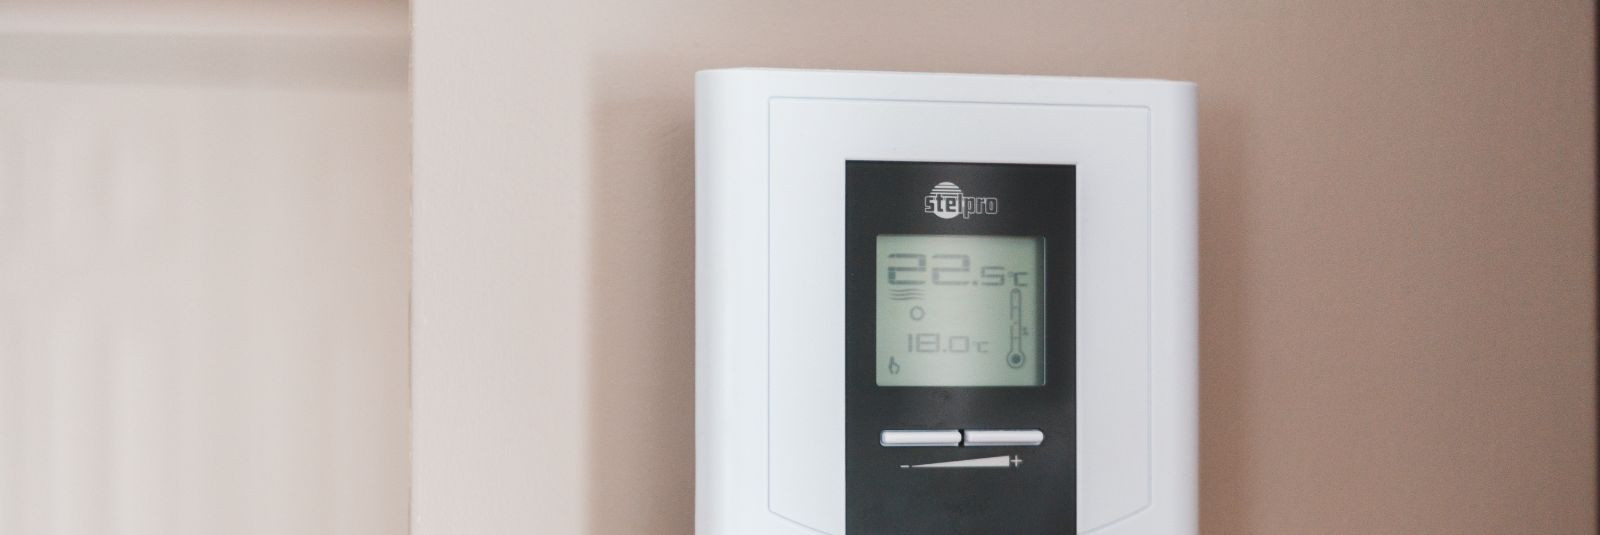 Ventilatsioonisüsteem ei taga mitte ainult head õhukvaliteeti, vaid aitab ka hoida ruumiideaalset temperatuuri. Ventilatsioonisüsteemi abil on võimalik reguleer